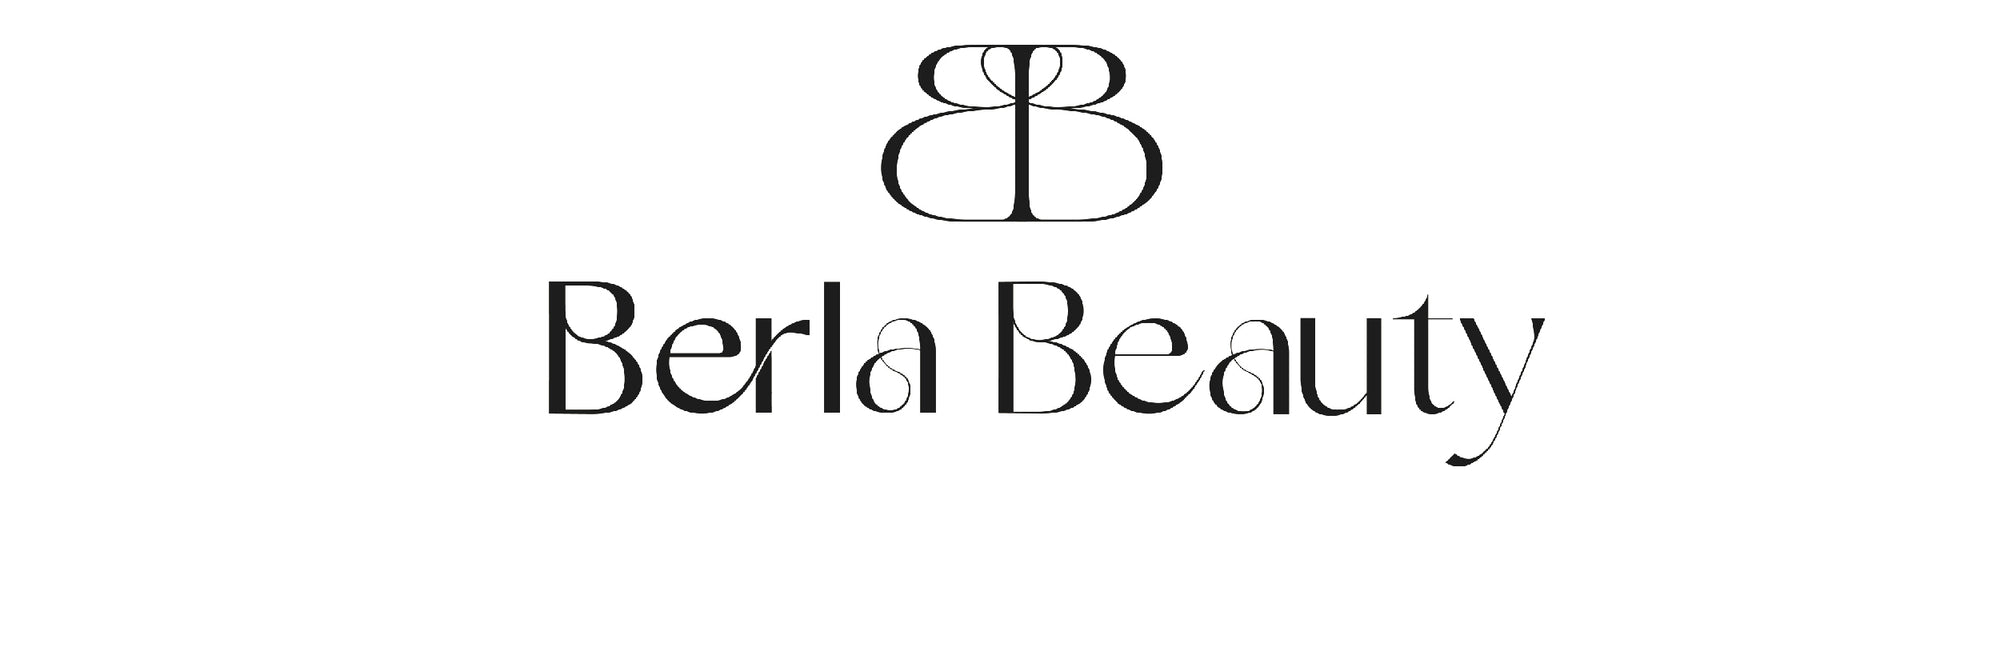 Berla Beauty logo